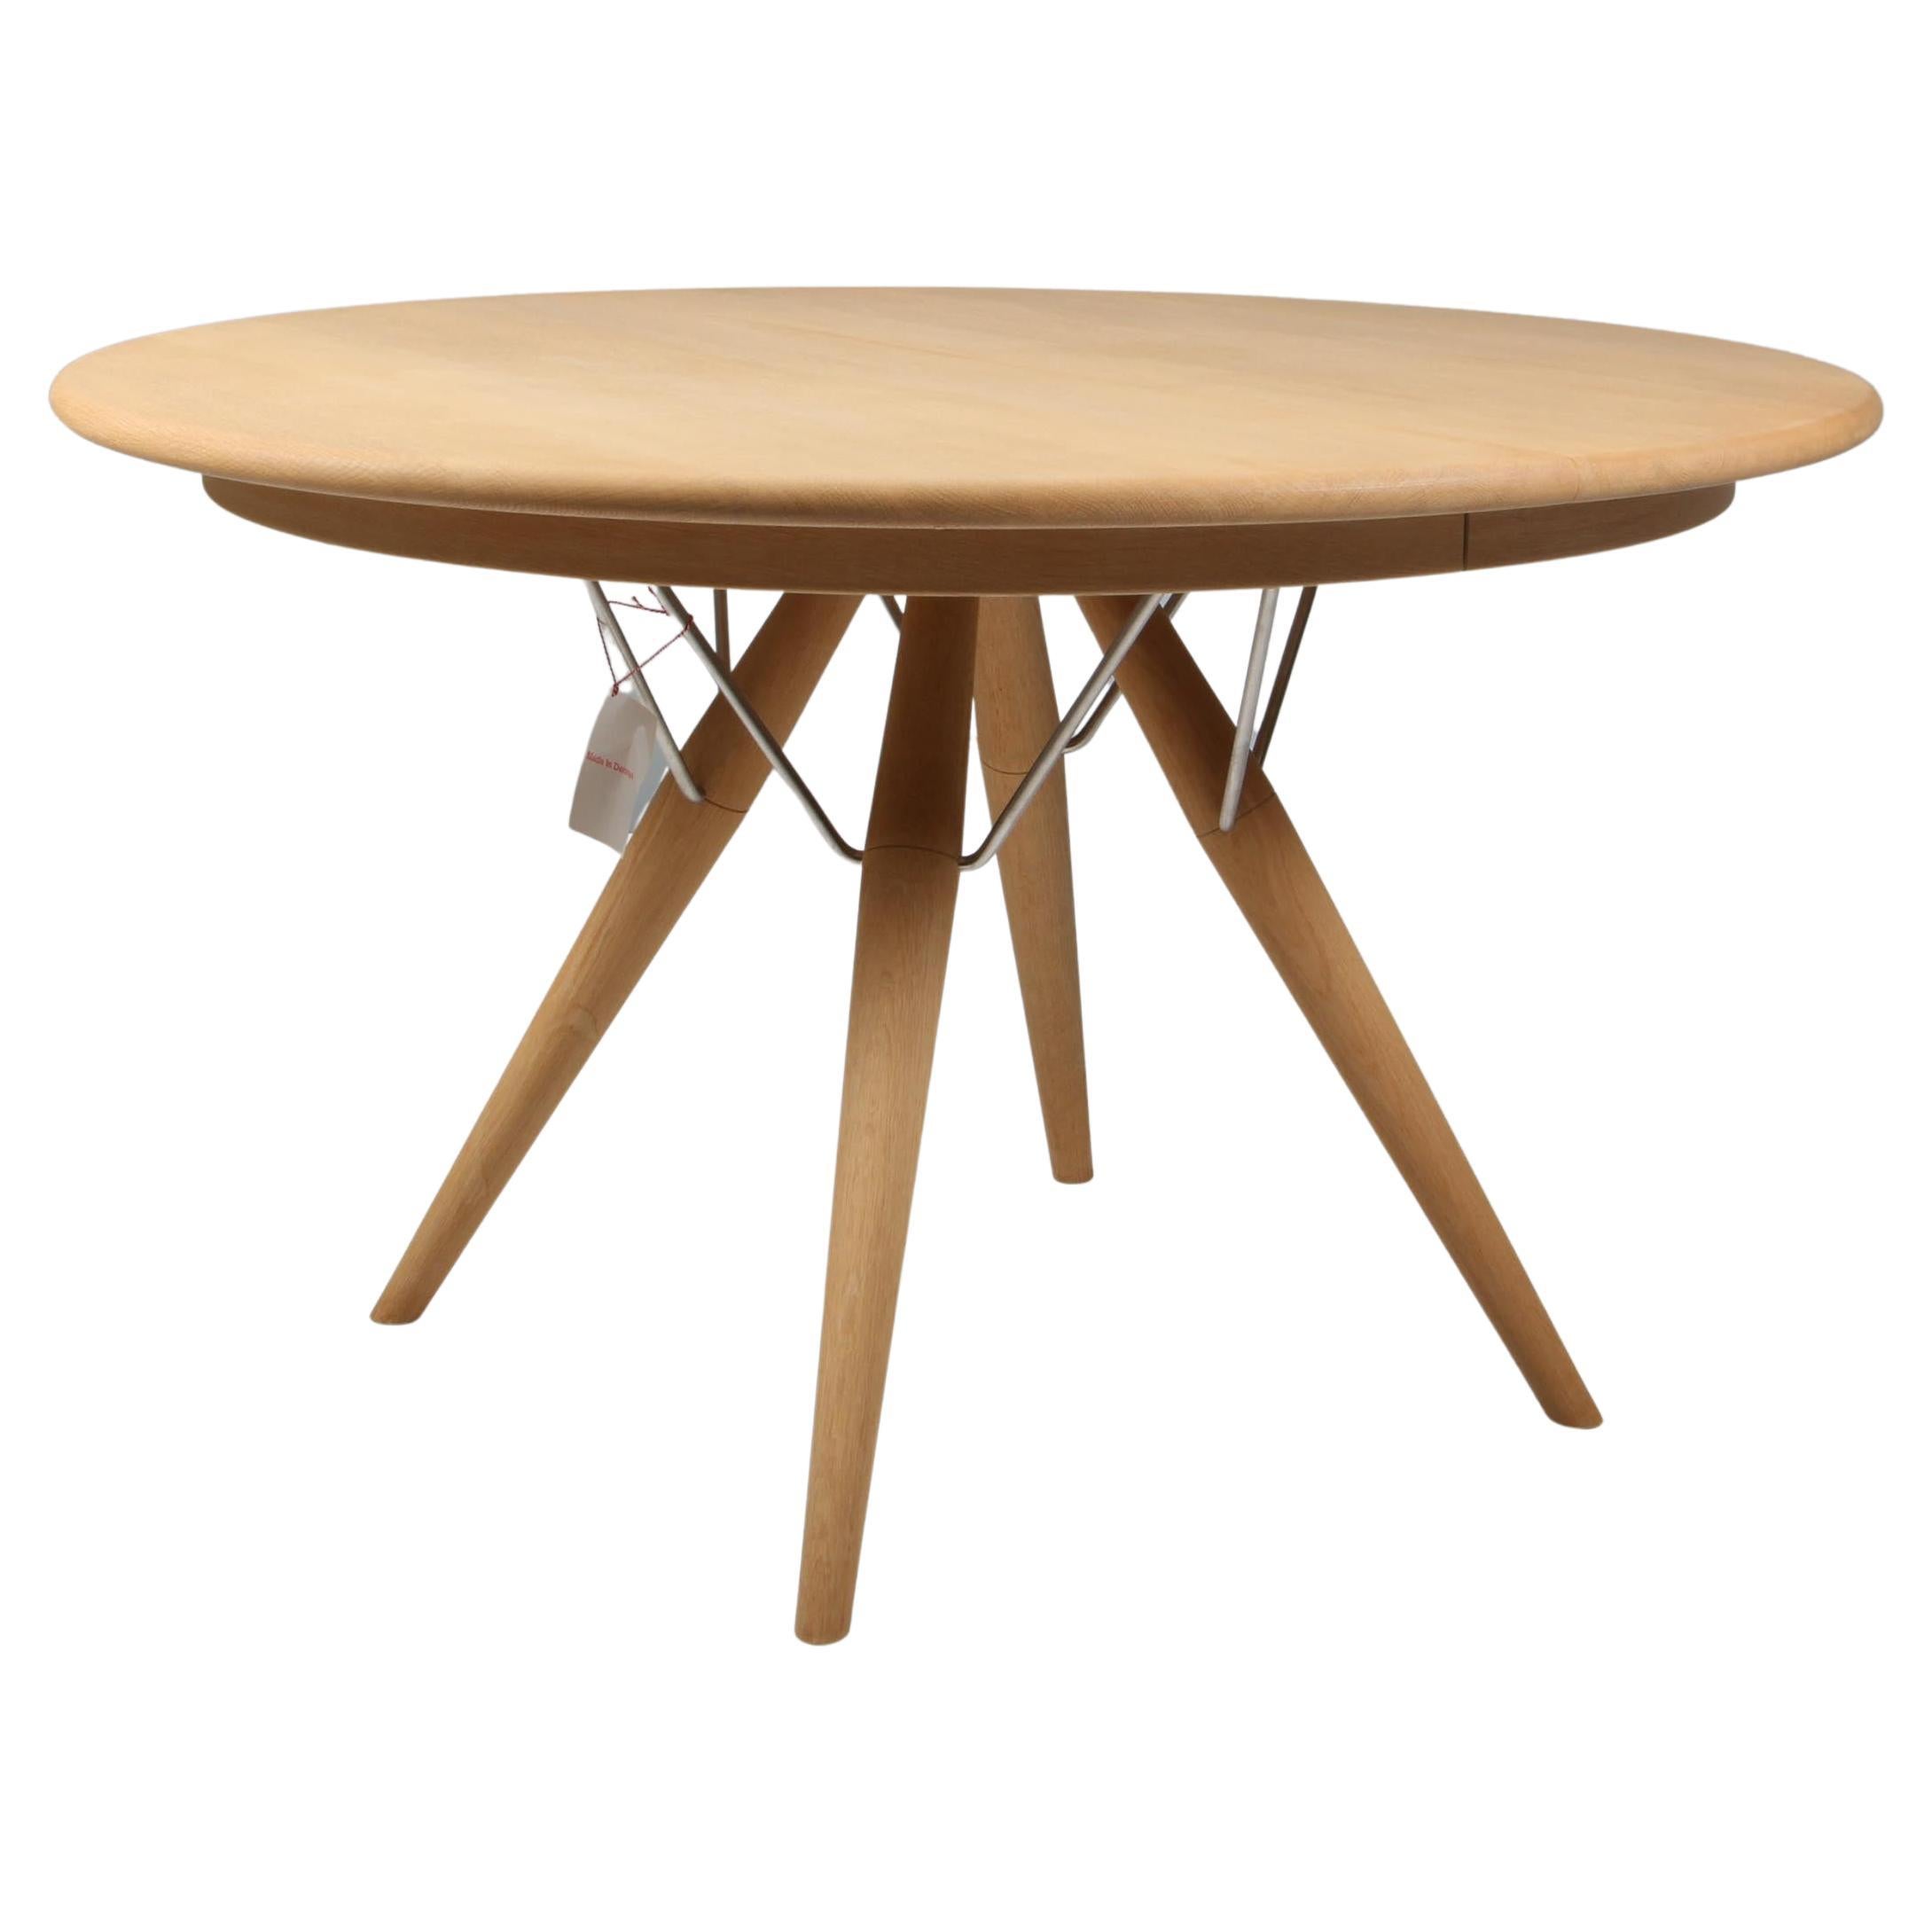 Hans J. Wegner PP75 Circular Dining Table in Solid Oak, Denmark 2000s